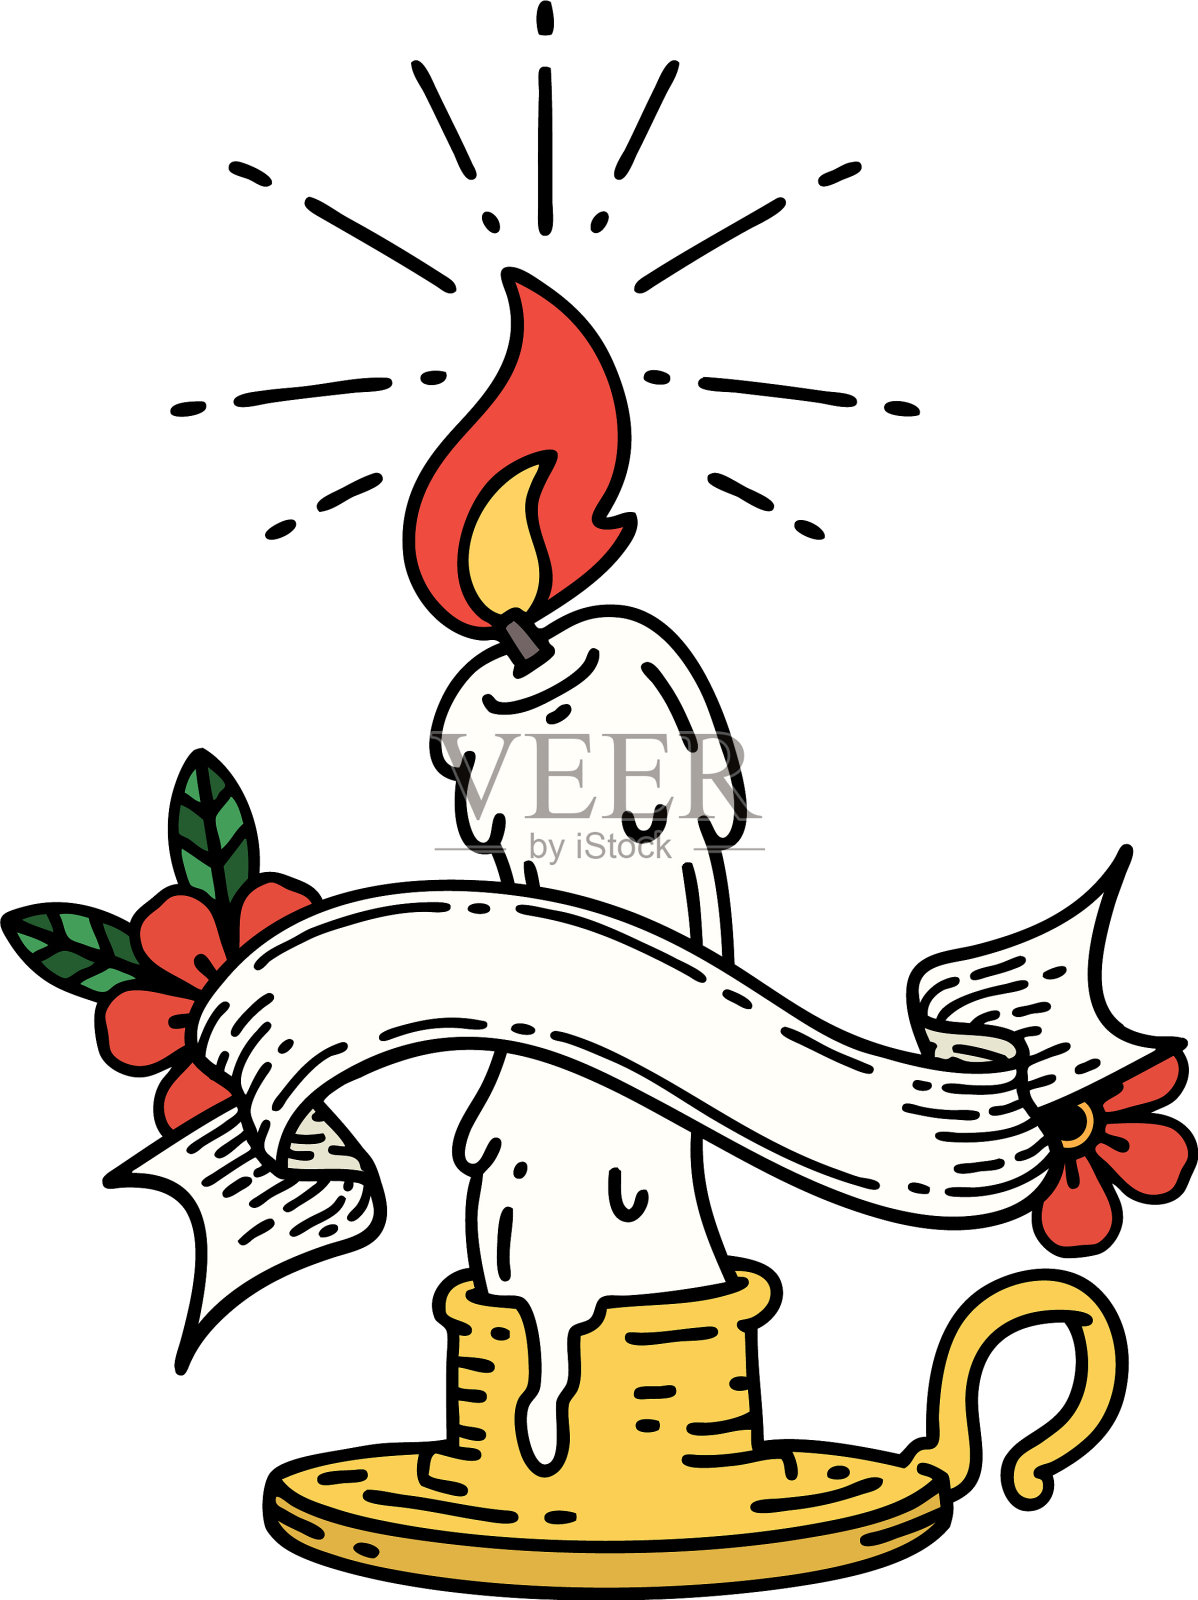 旗帜纹身风格幽灵融化蜡烛插画图片素材